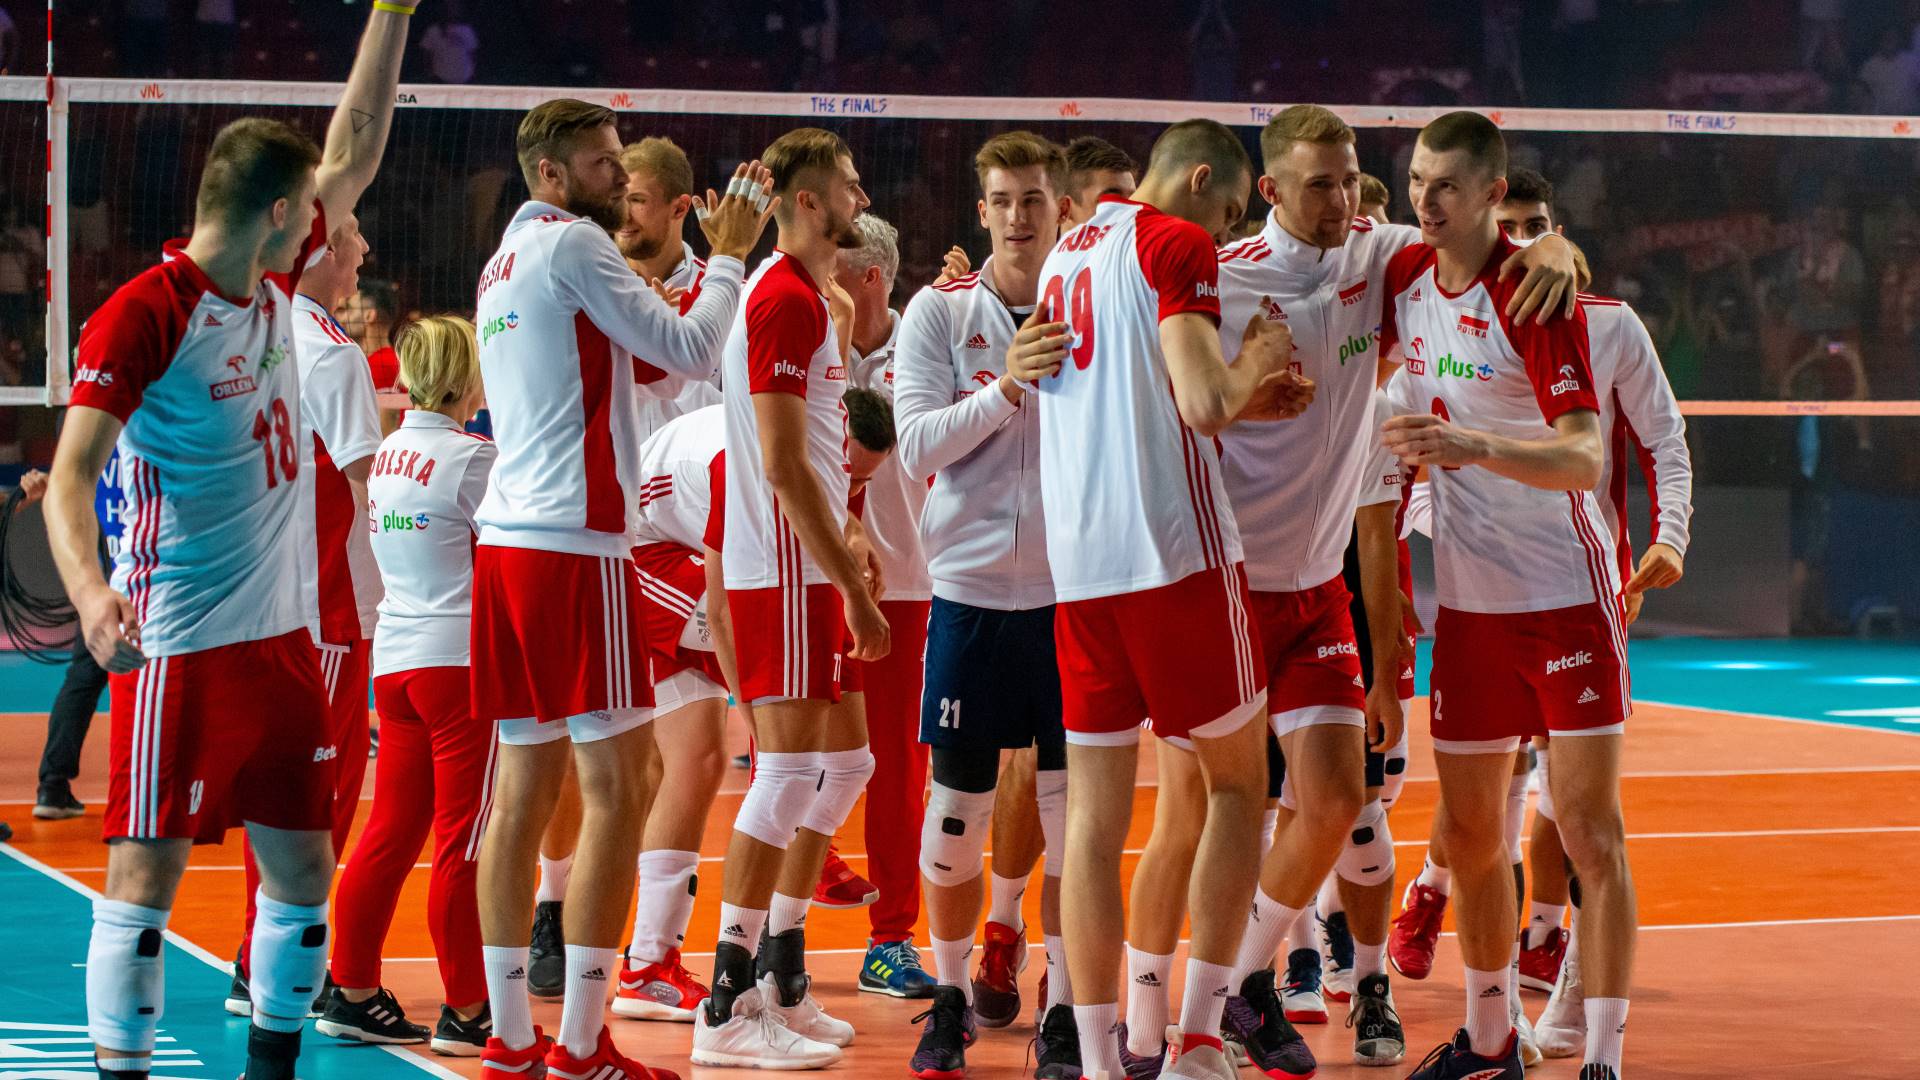 Siatkarskie sukcesy Polski: Historia i analiza osiągnięć drużyn narodowych